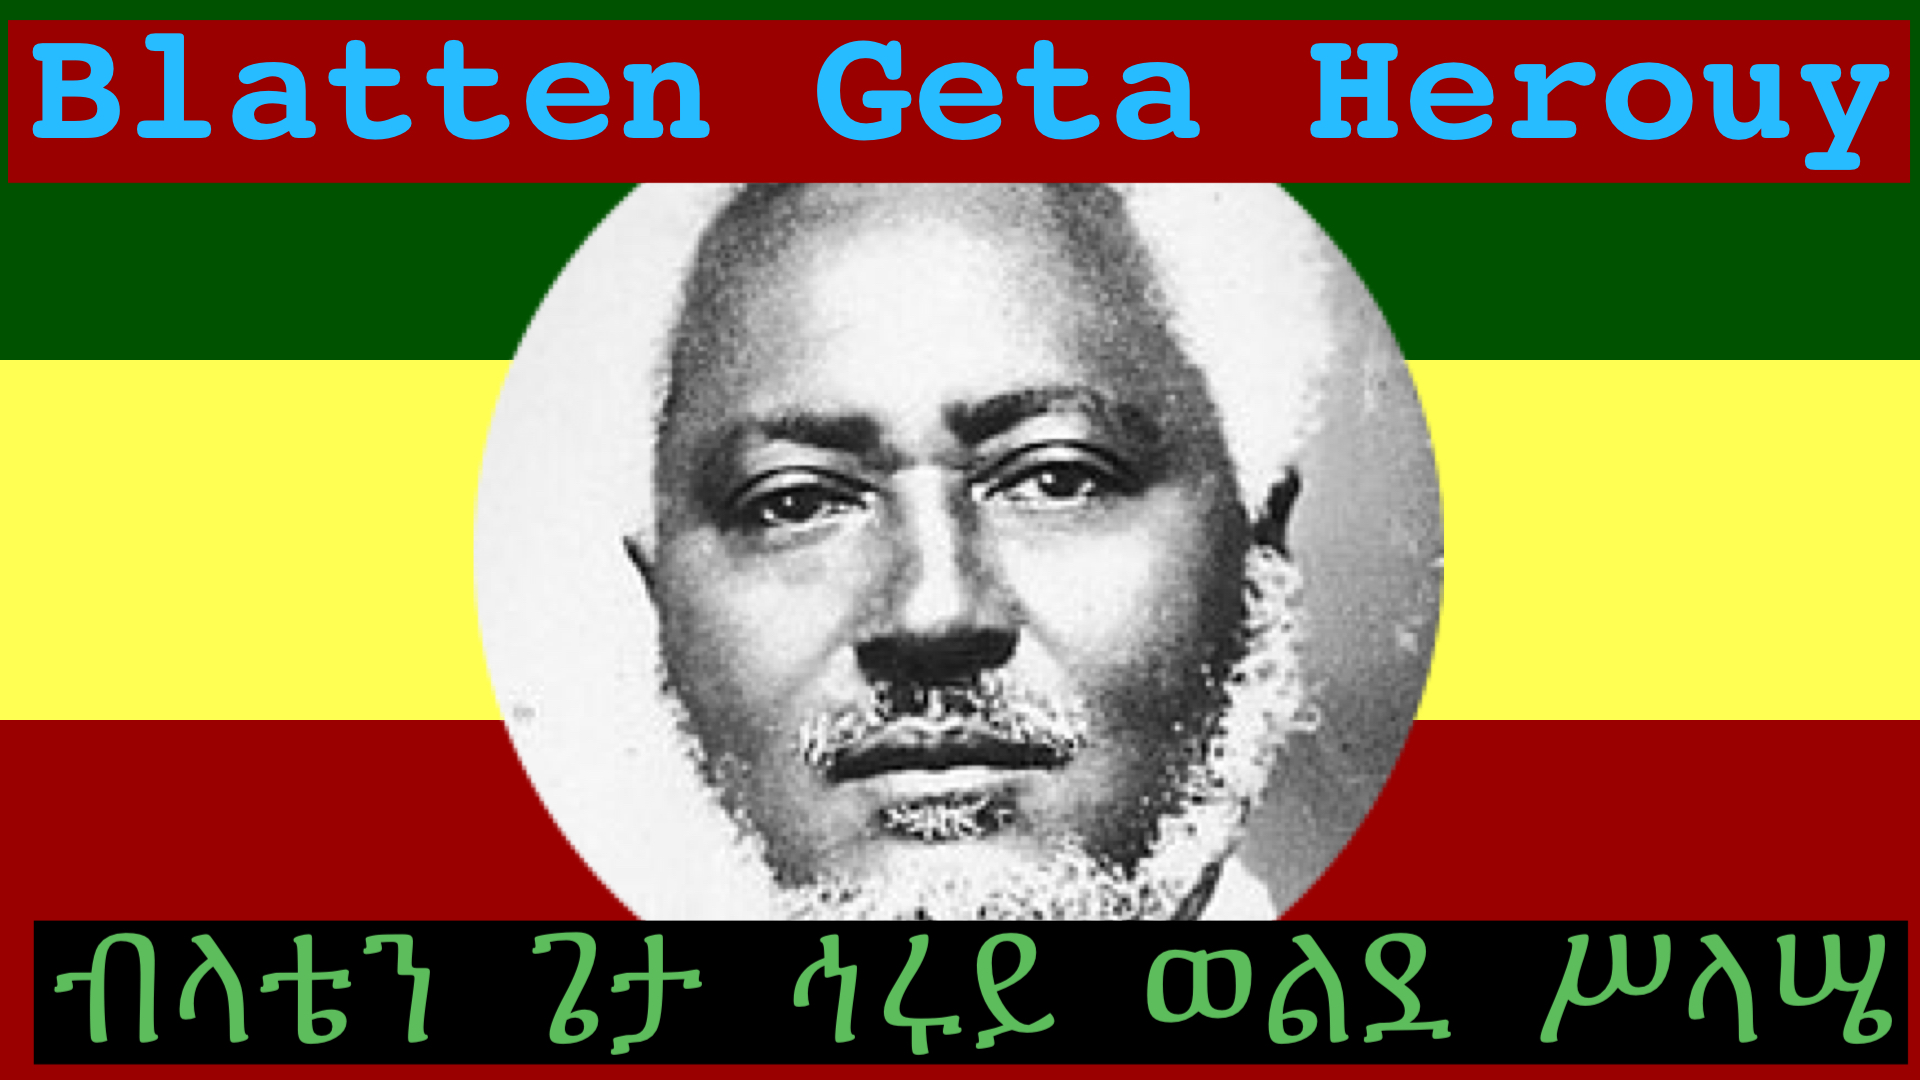 Tribute to Blatten Geta Herouy Wolde Selassie 1878 -1939 ፀሎተ ፍታት ለብላቴን ጌታ ህሩይ at Bath Abbey 18.09.21